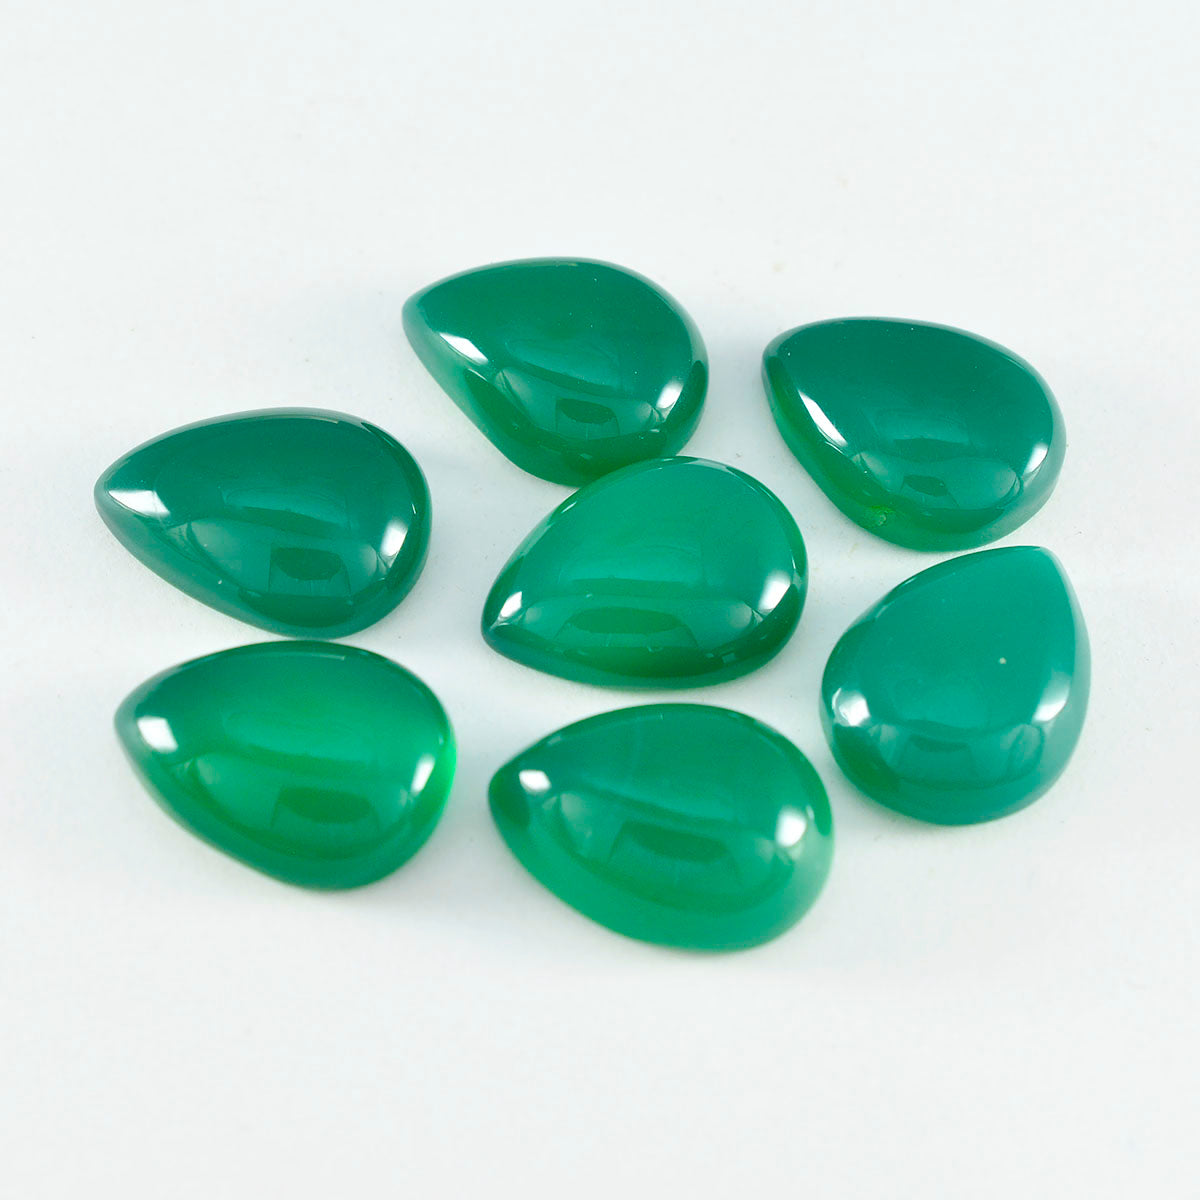 Riyogems 1 Stück grüner Onyx-Cabochon, 10 x 14 mm, Birnenform, tolle Qualität, lose Edelsteine